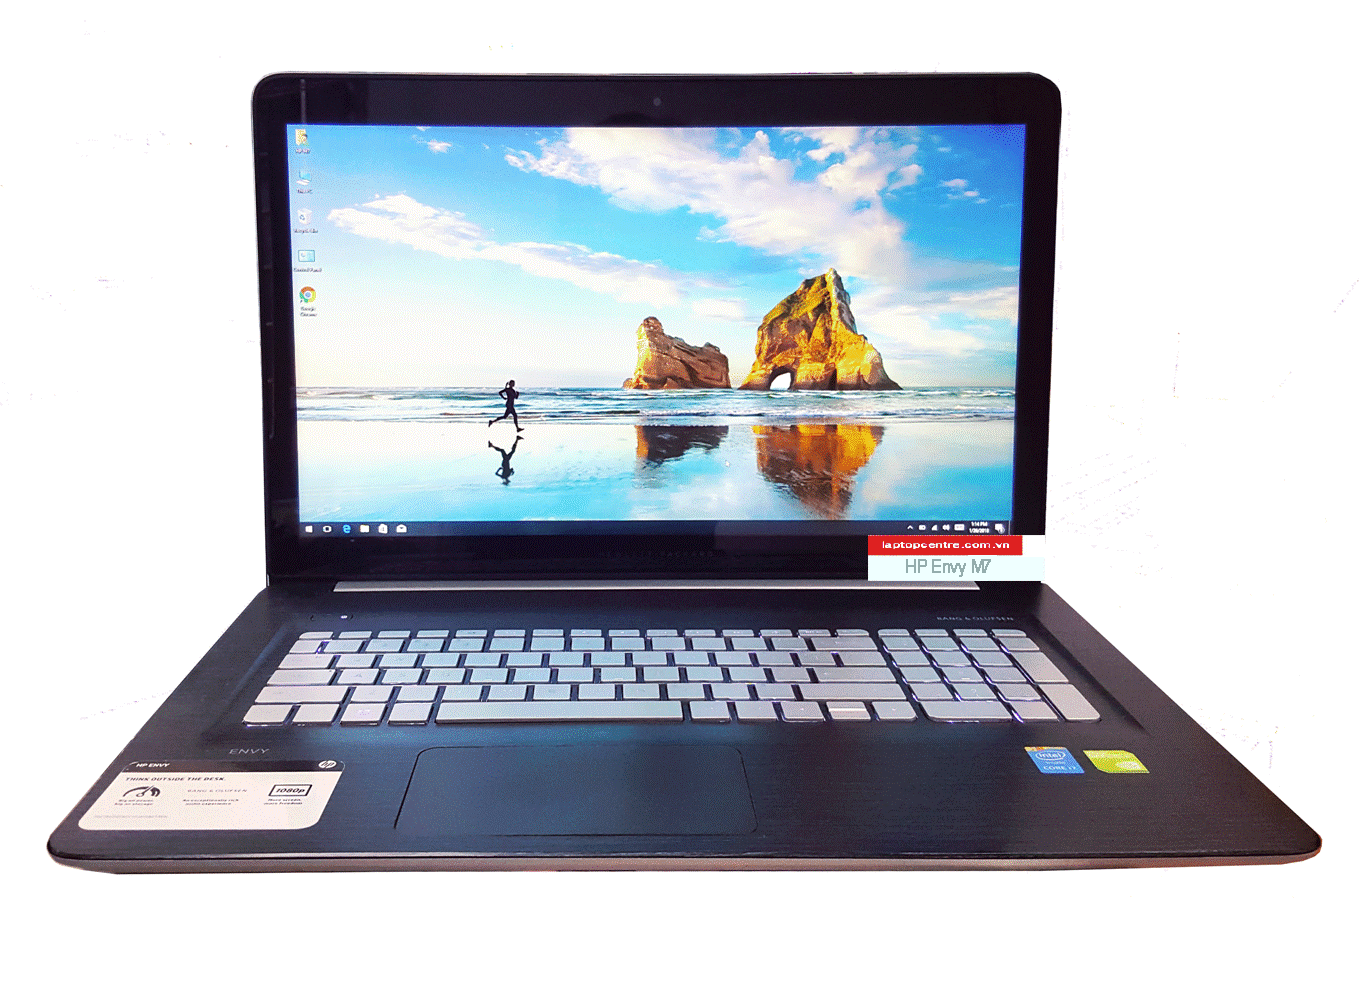 Laptop HP Envy M7-N101DX I7-5500 NVIDIA GeF.940M